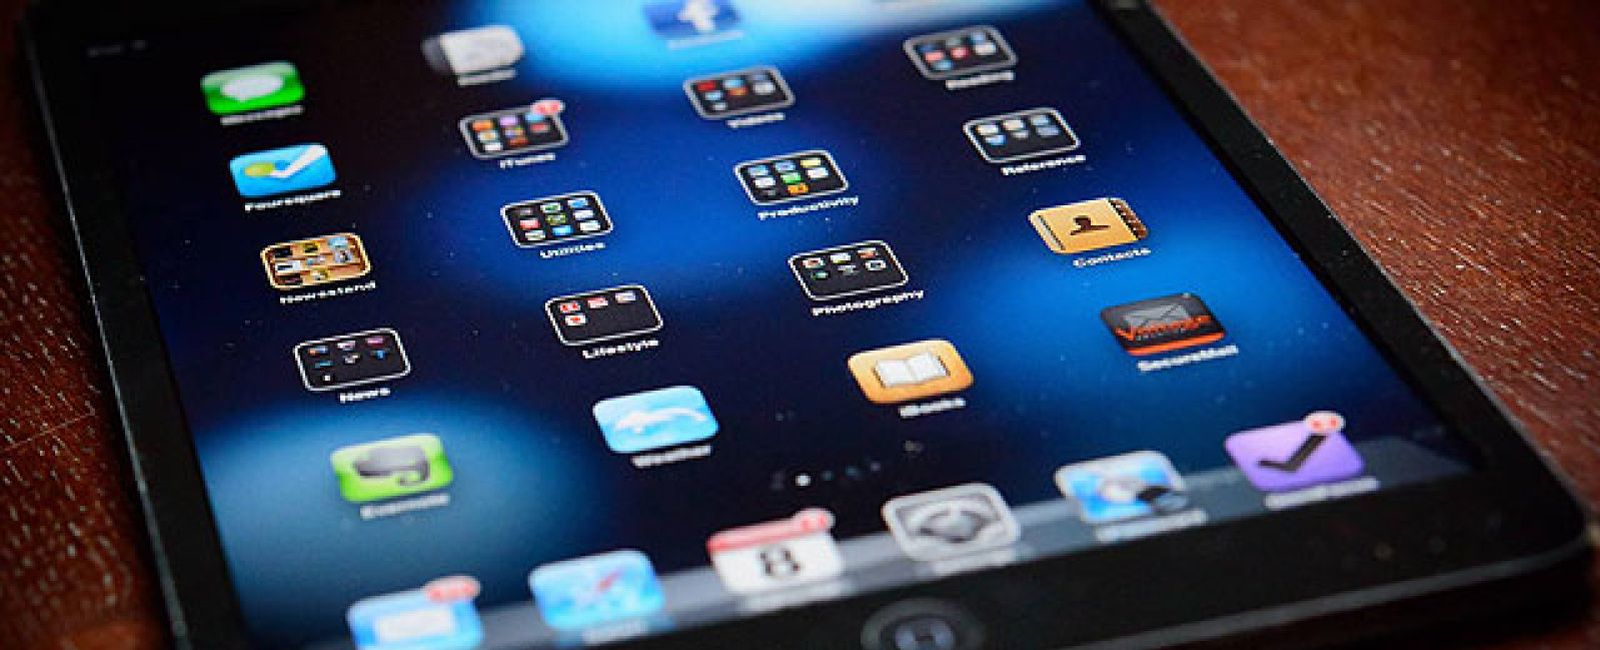 Foto: Con el iPad también se puede trabajar, como demuestran estas 'apps'